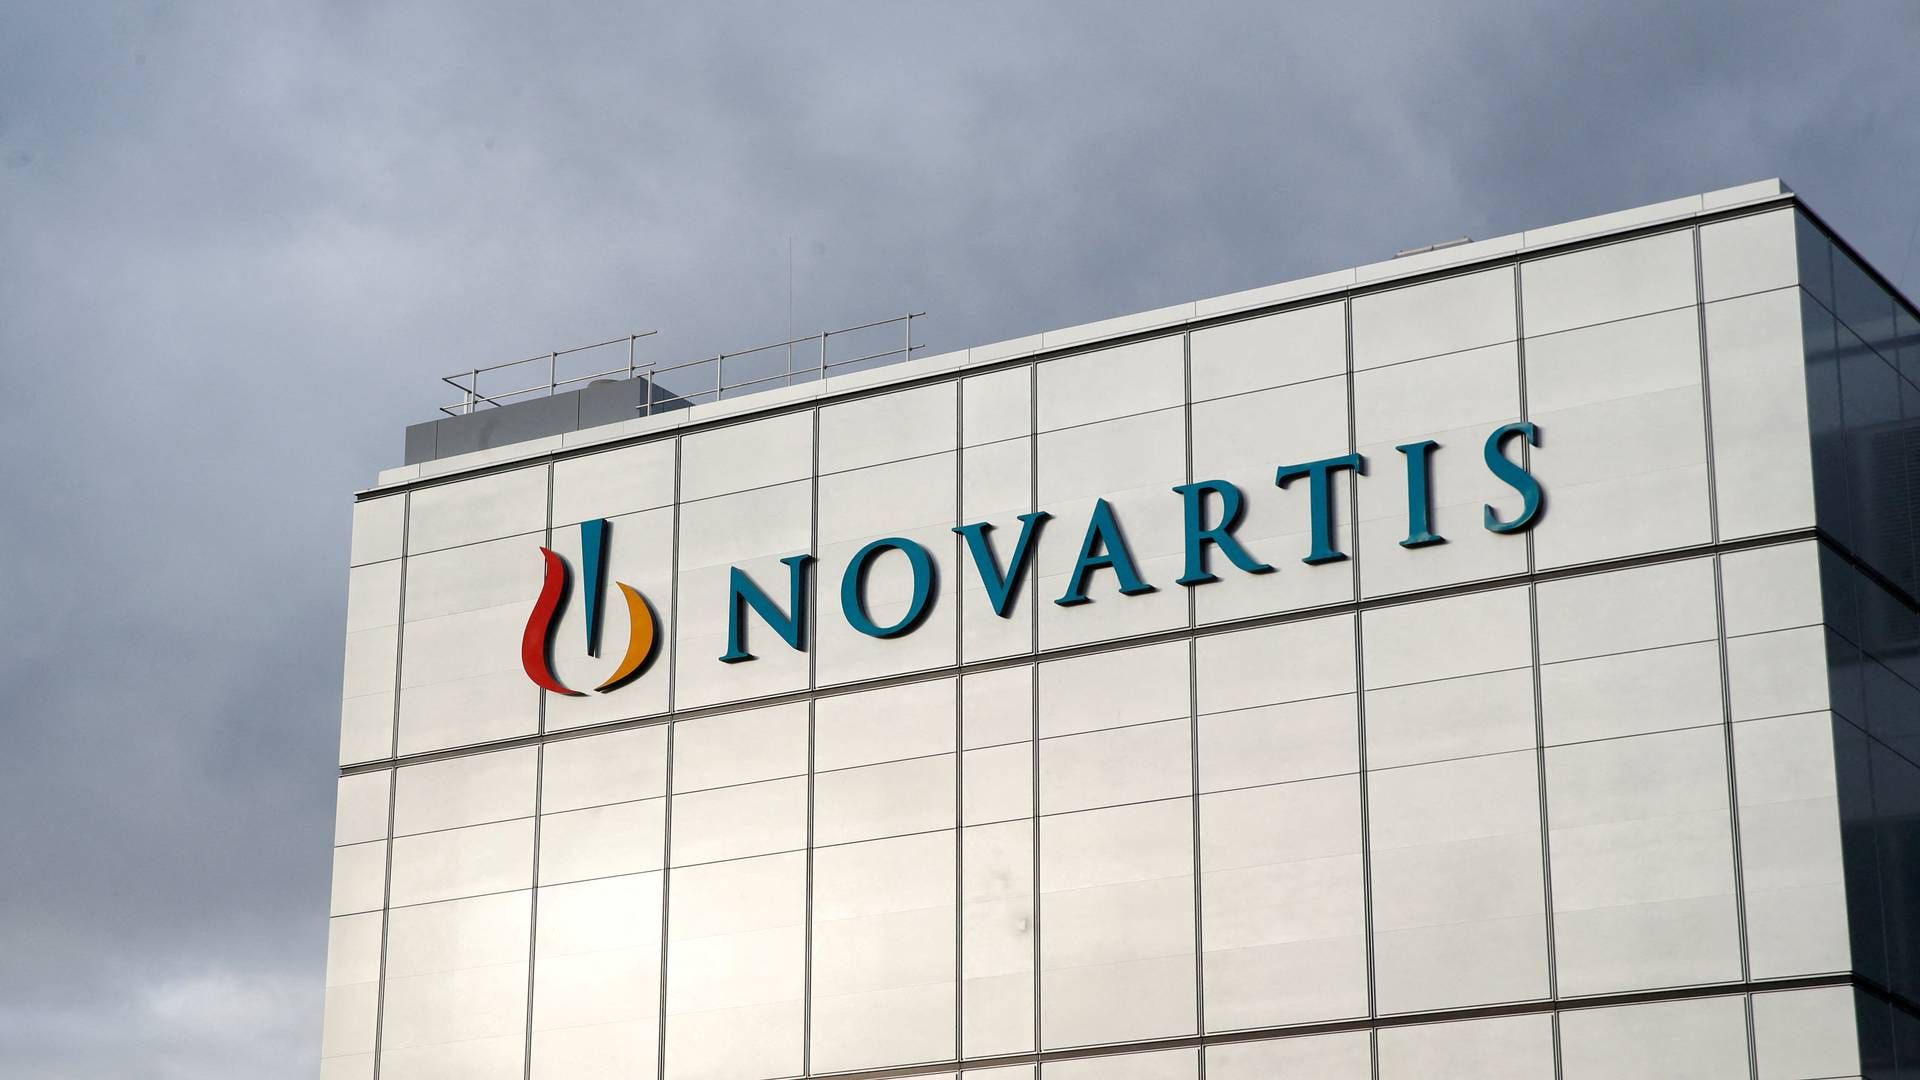 Novartis har gennemført juni måneds annoncerede opkøb af det amerikanske biotekselskab Chinook Therapeutics for op mod 3,5 mia. dollar svarende til 23,8 mia. kr. | Foto: Arnd Wiegmann/Reuters/Ritzau Scanpix